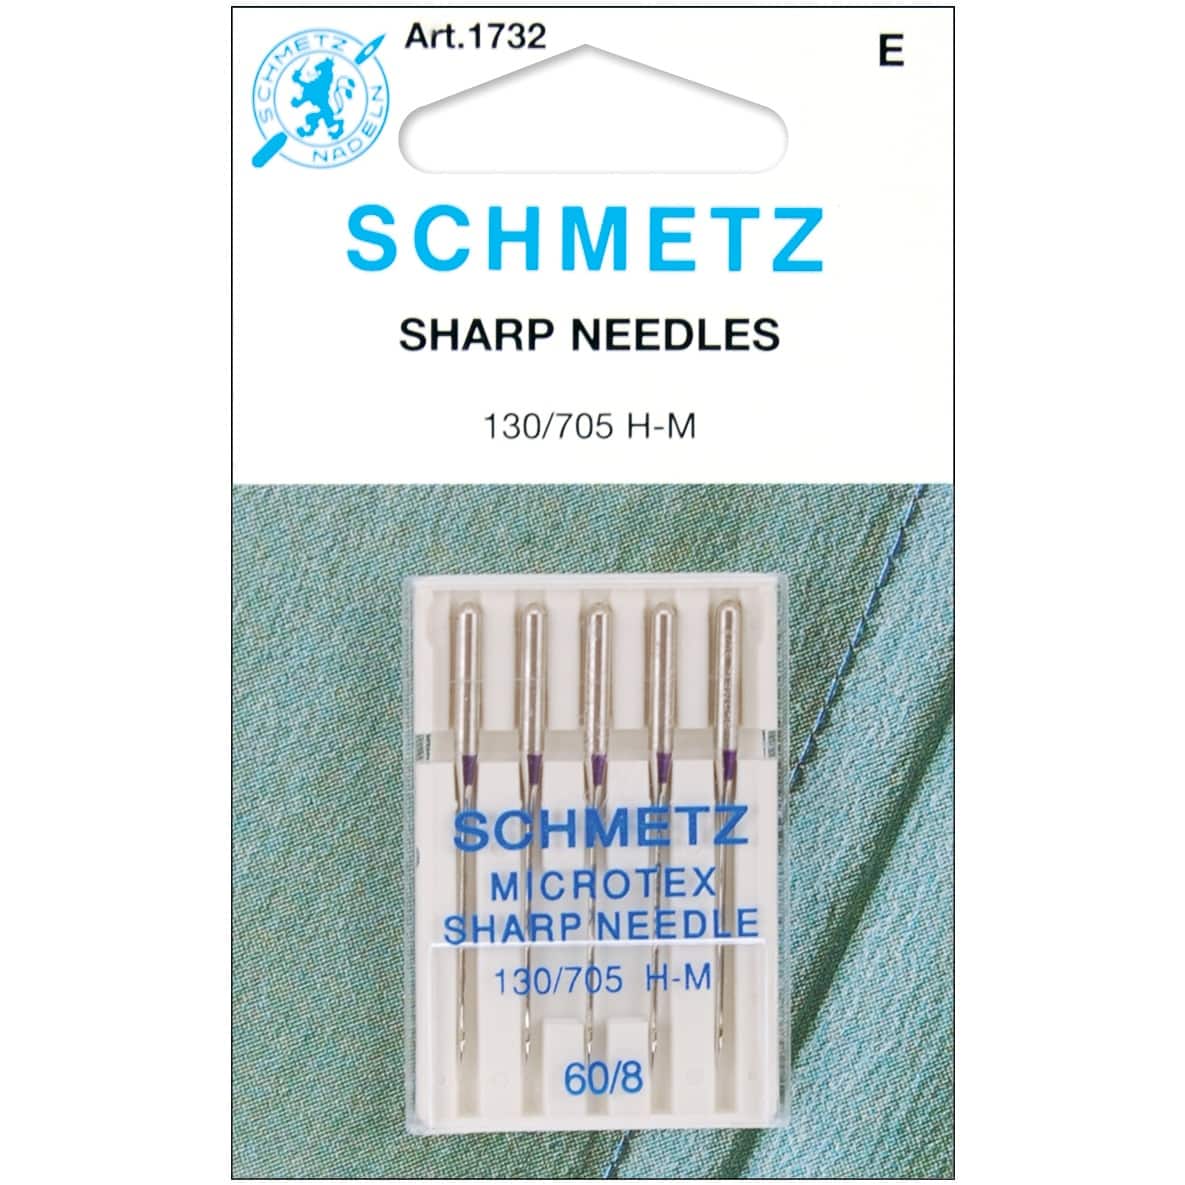 Euro-Notions SCHMETZ Microtex Sharp Machine Needles, 5ct.